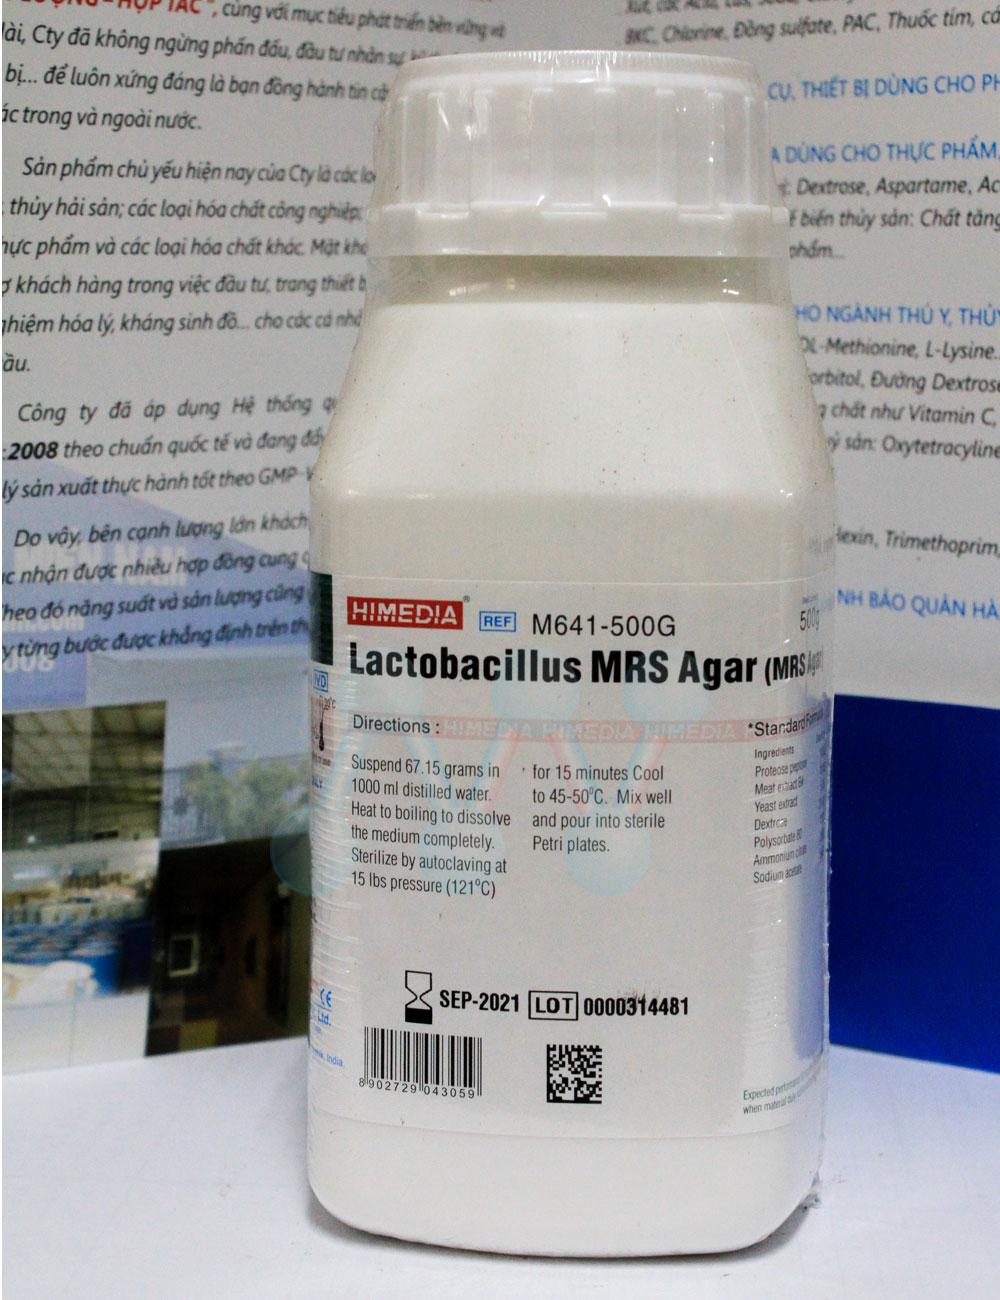 Lactobacillus MRS Agar